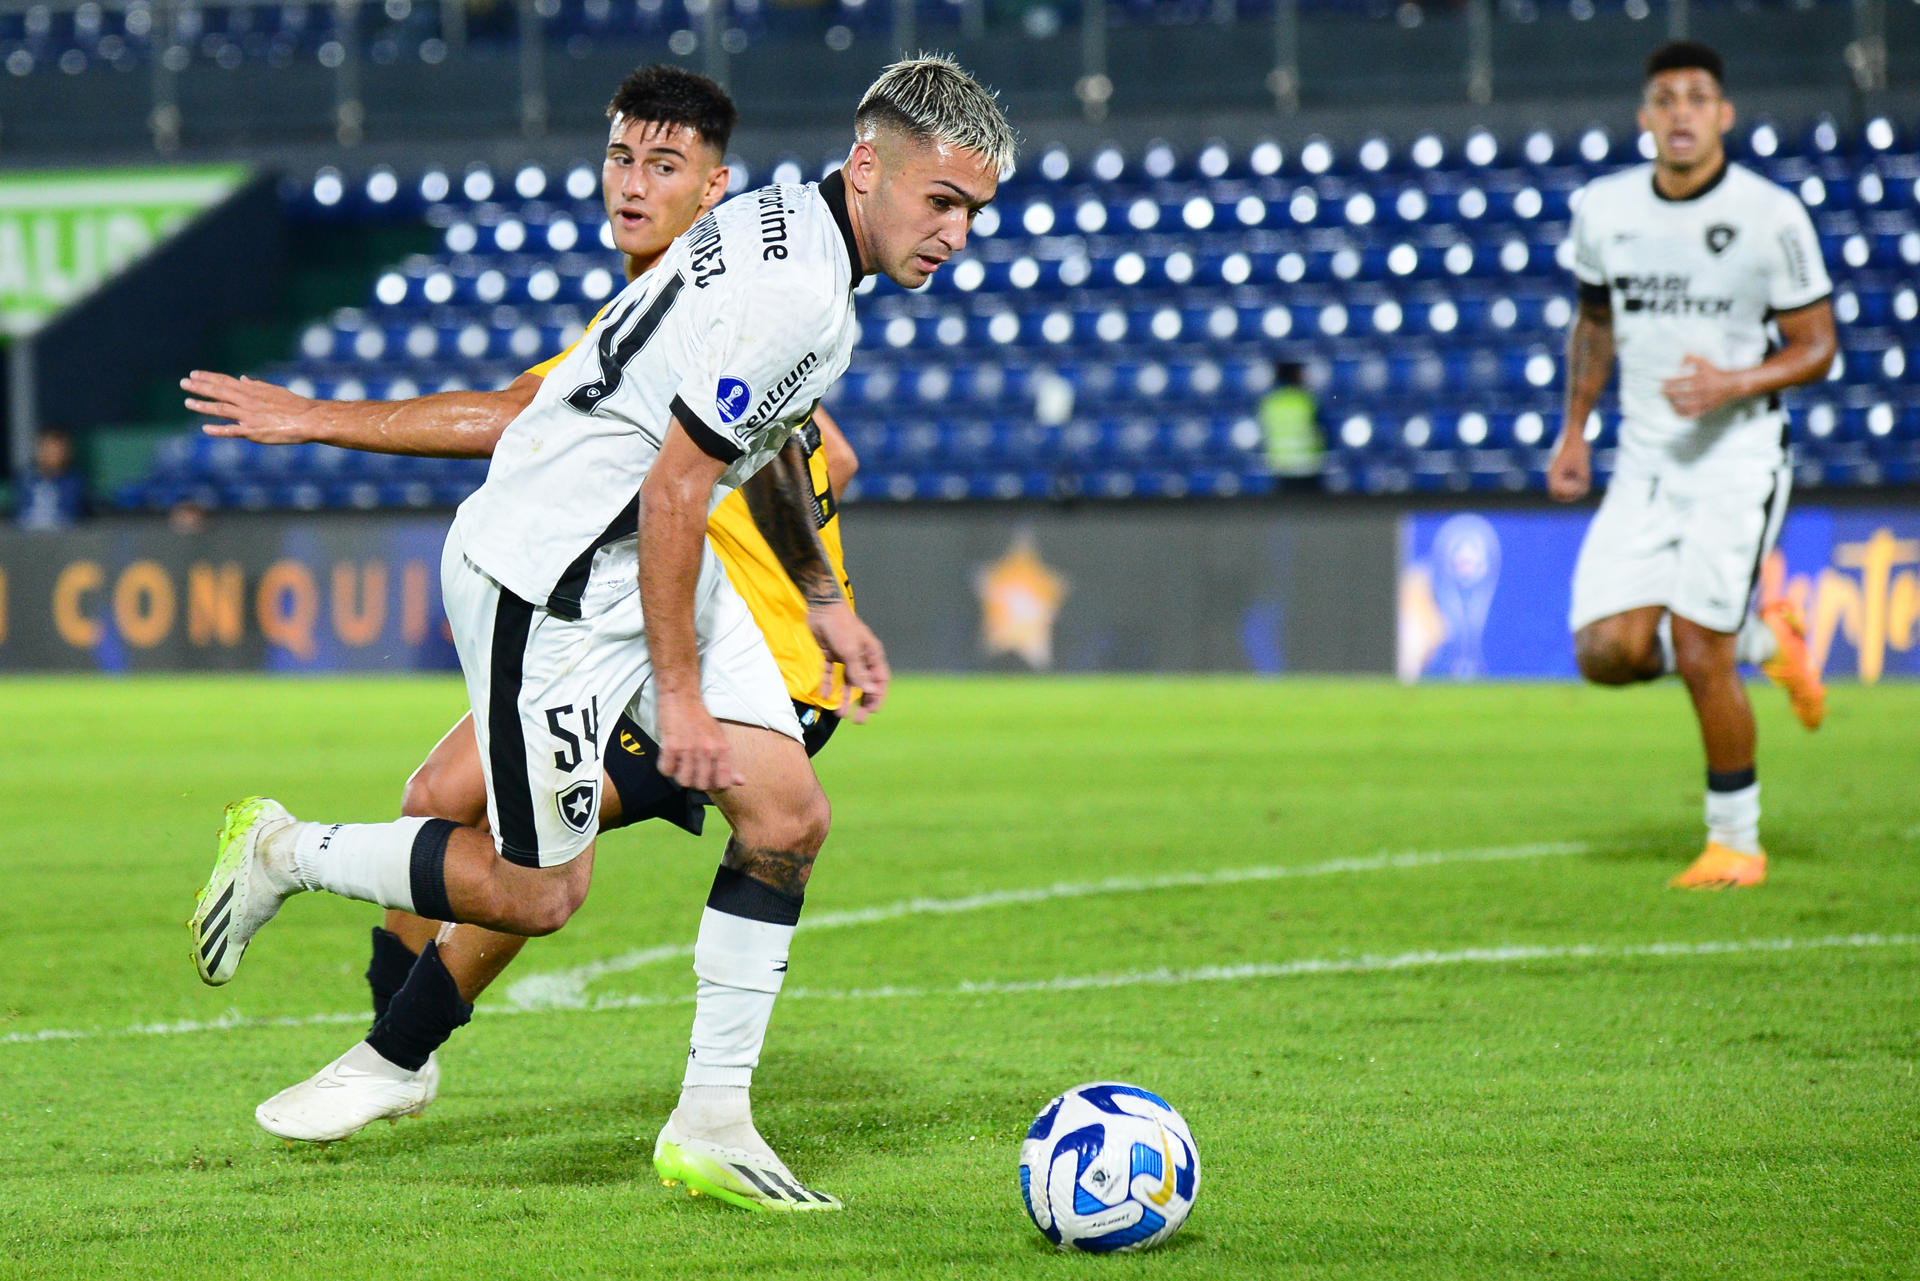 alt Botafogo deja en tierra al paraguayo Romero y al uruguayo Hernández por indisciplina